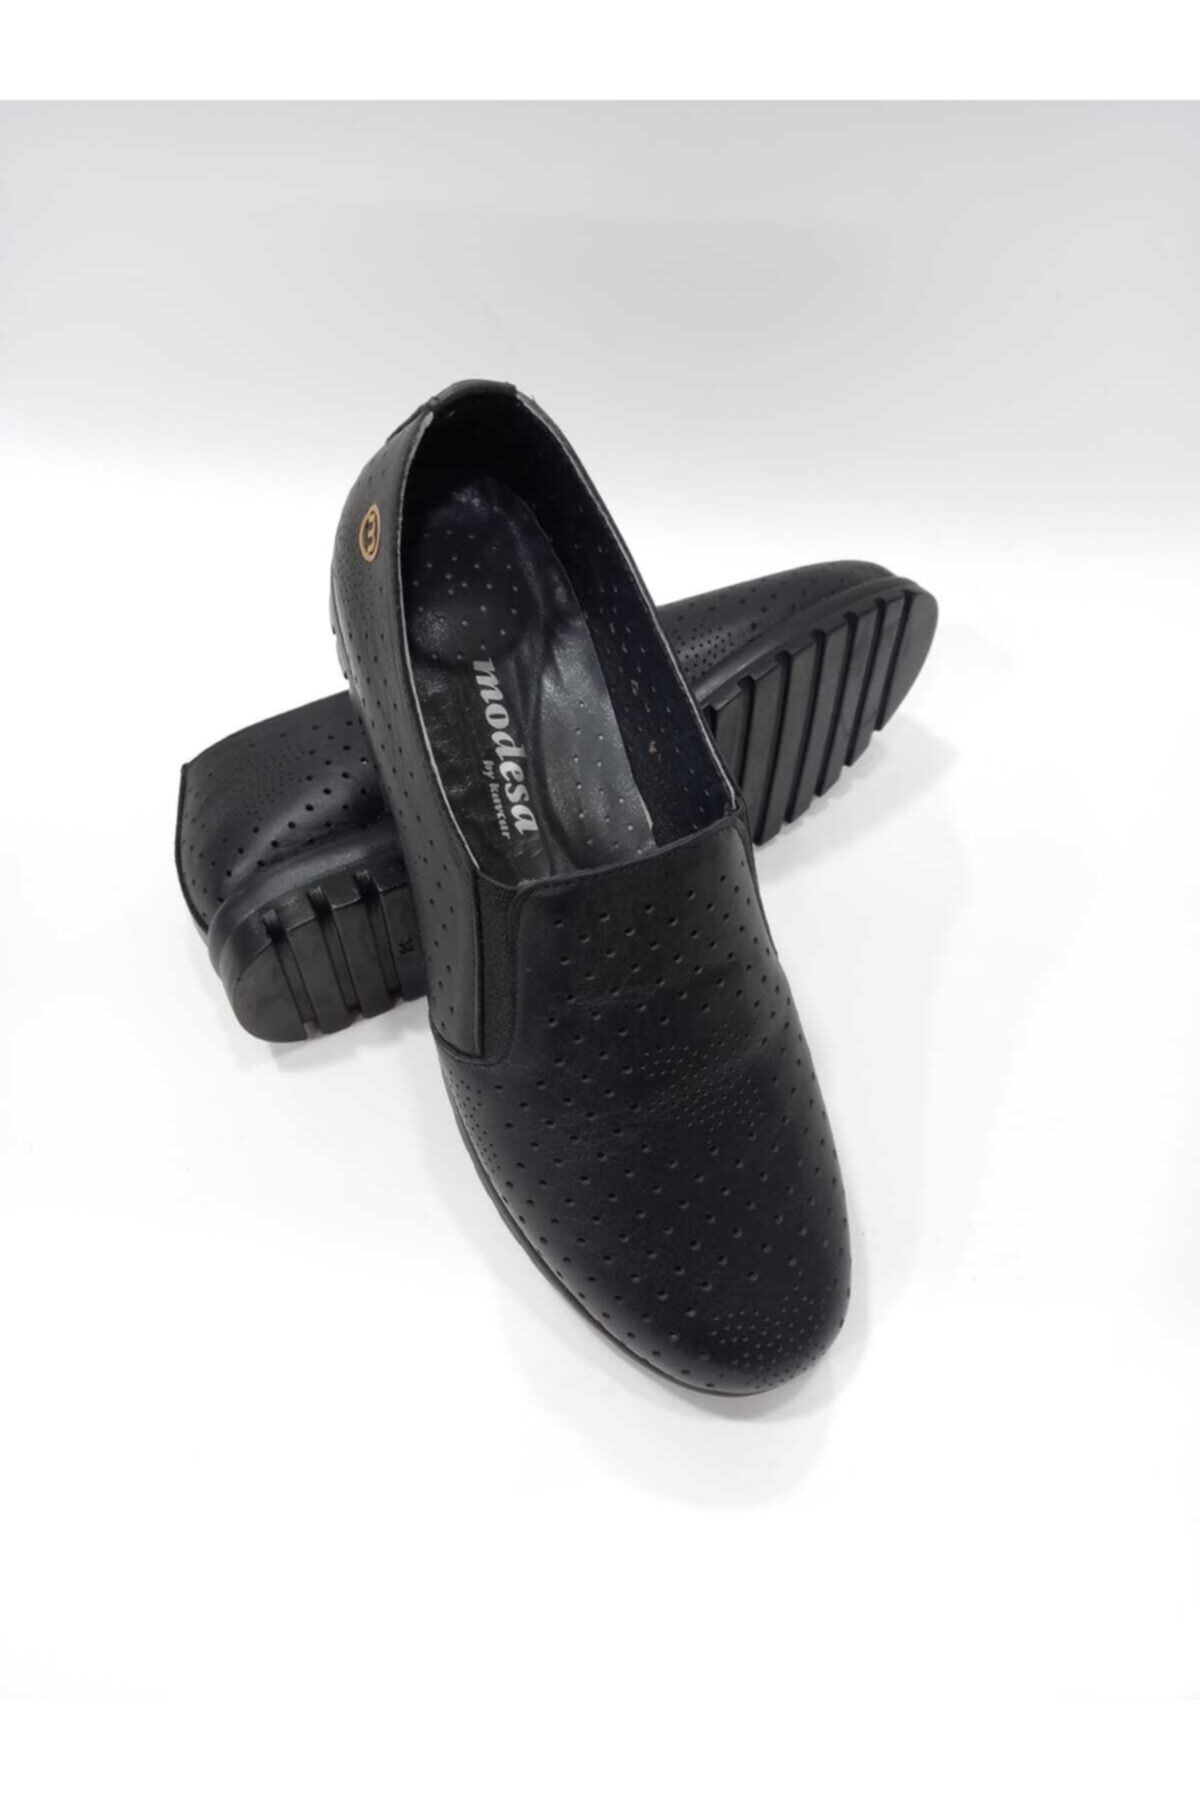 Modesa By Kavcar 027 Siyah Hakiki Deri Ortopedik Taban El Dikişli Kadın Günlük Ayakkabı